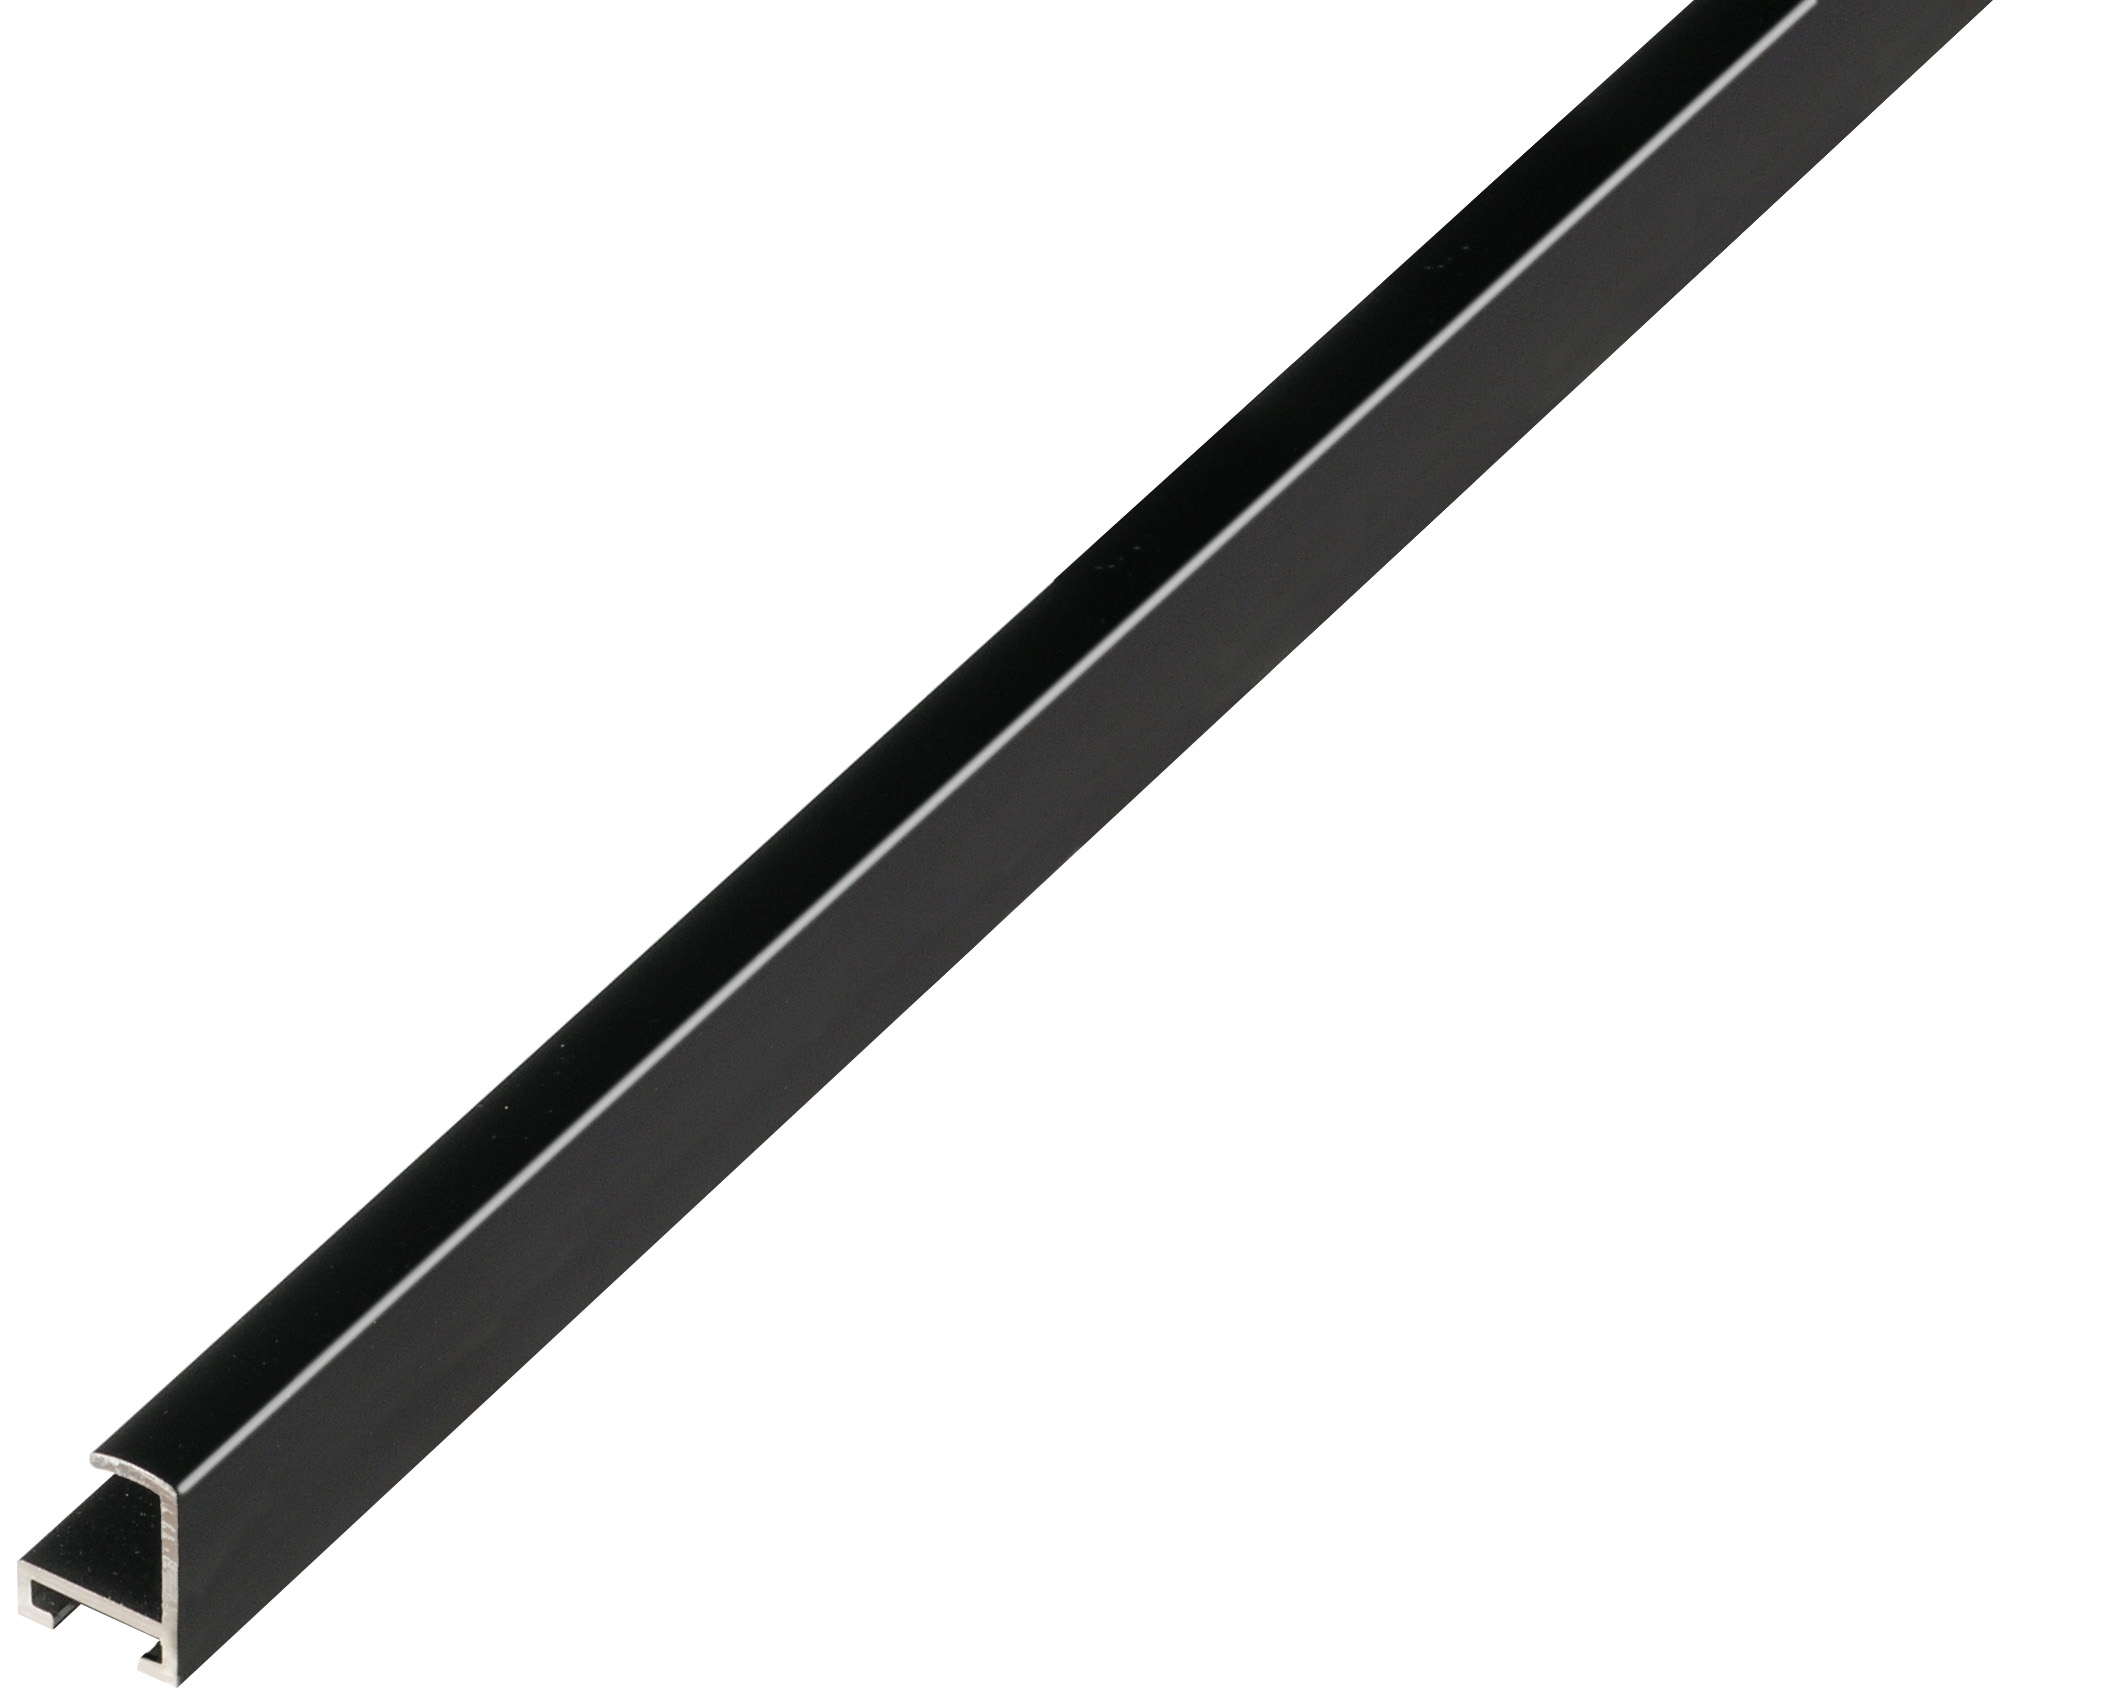 Asta alluminio serie 12 piatta nero satinato - 1250